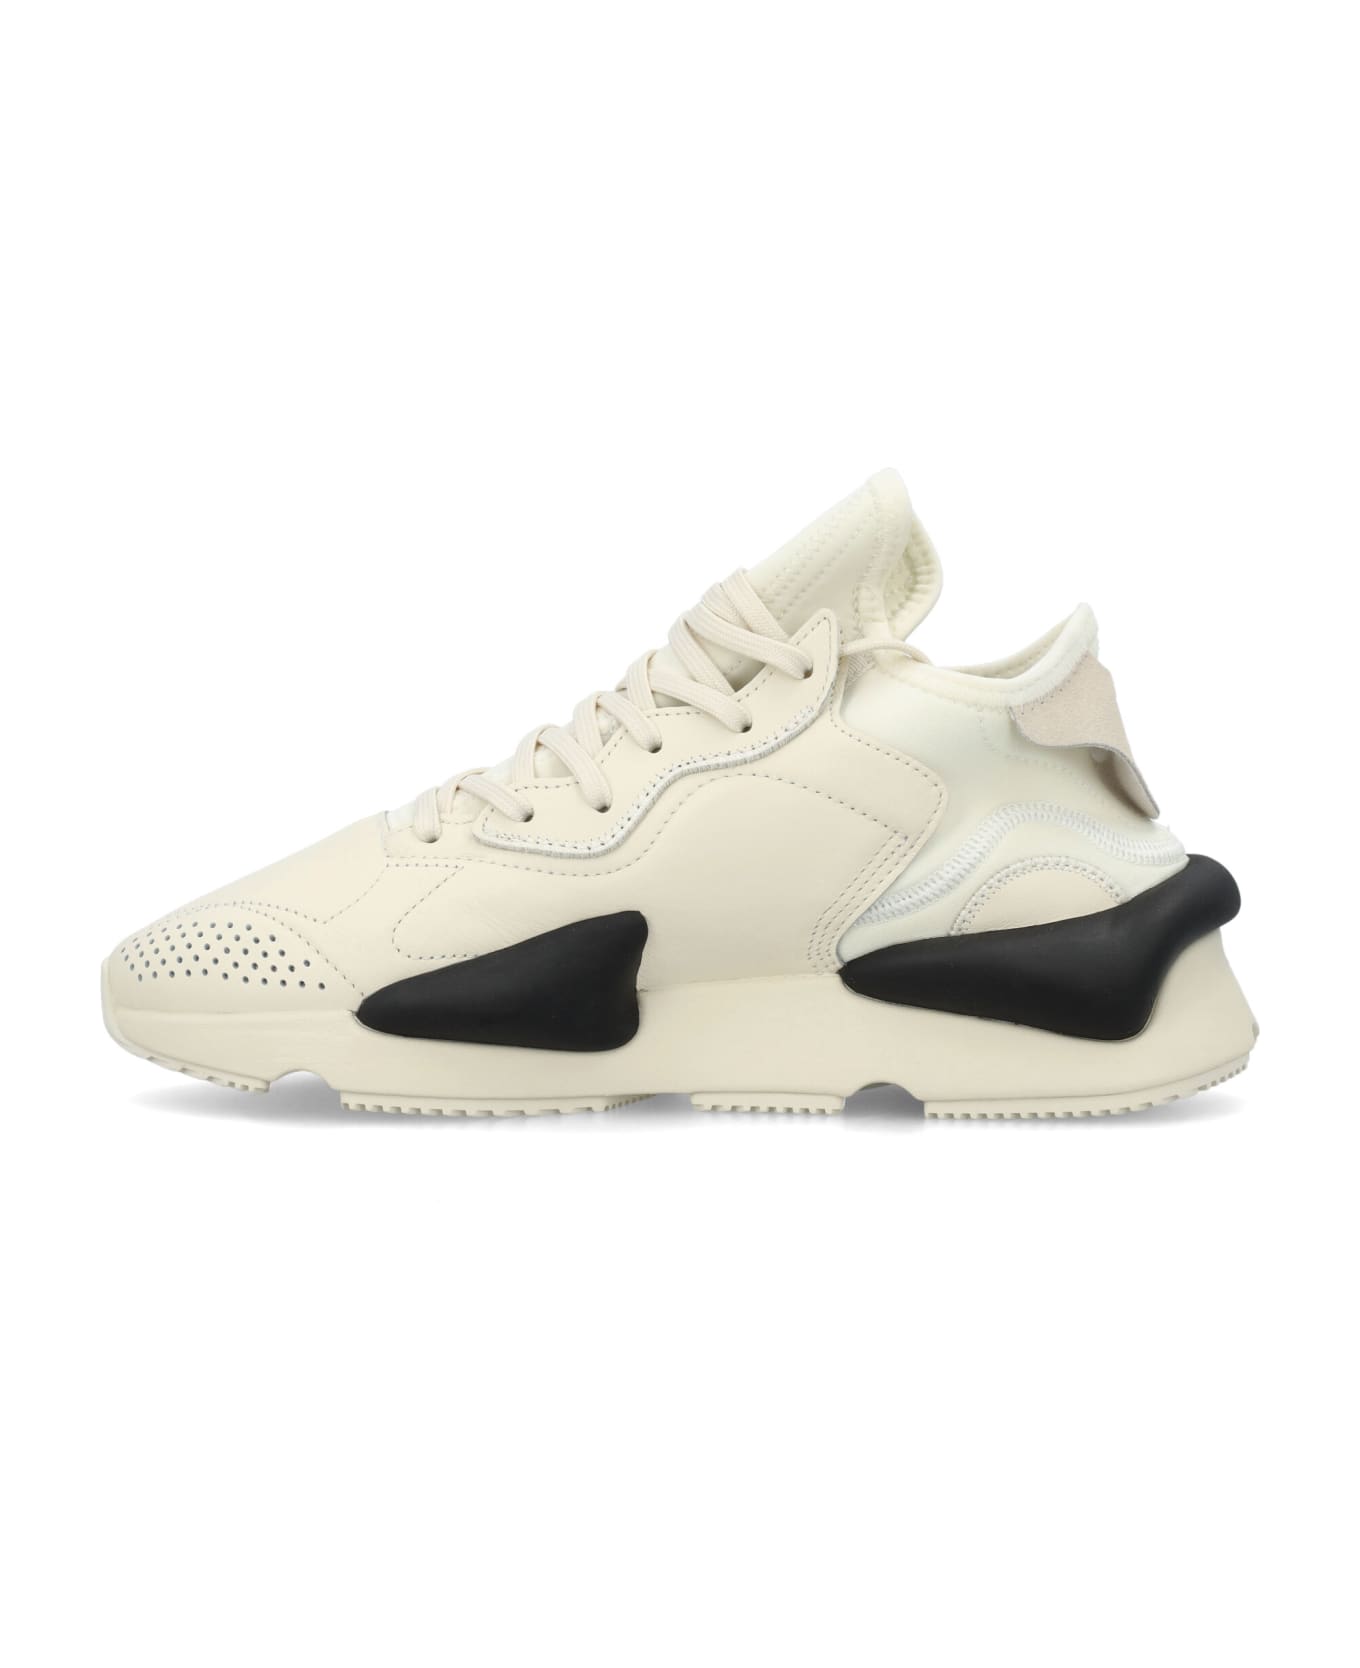 Y-3 Kaiwa Sneakers - WHITE